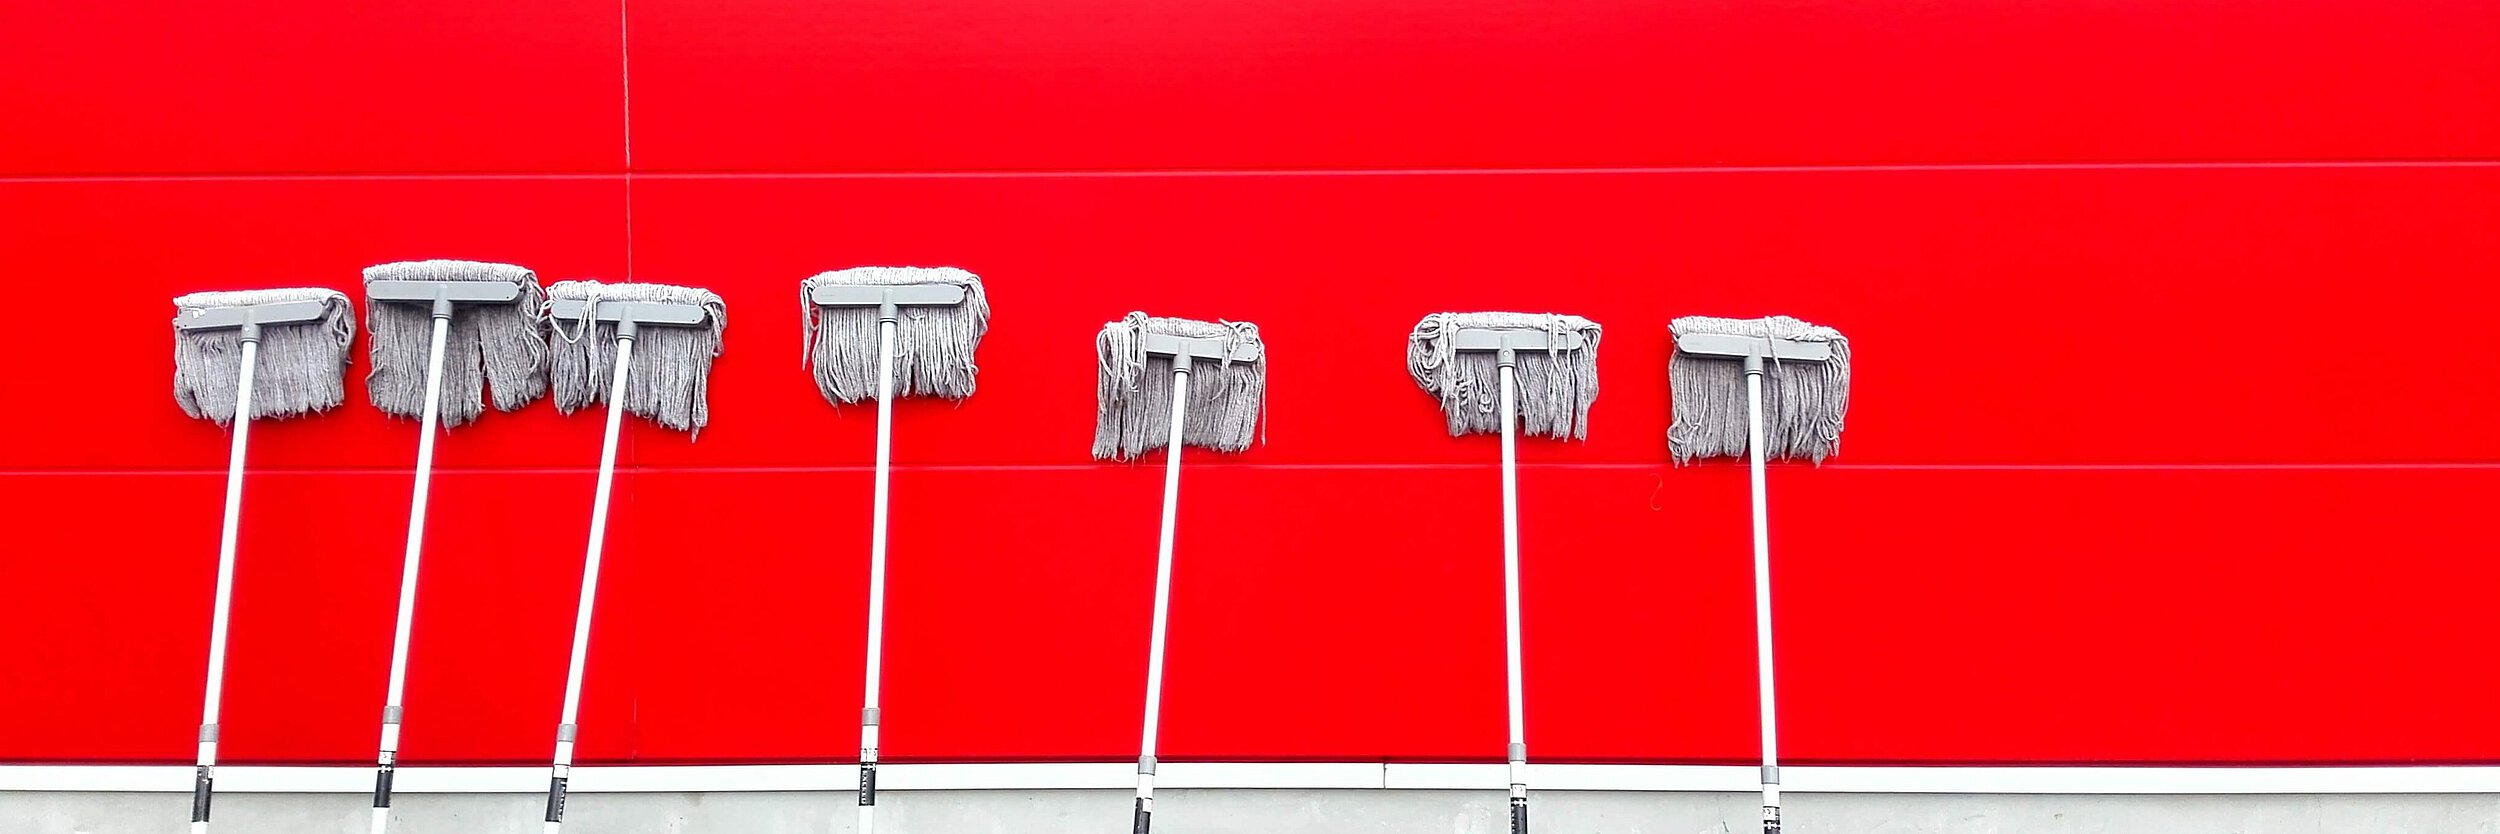 7 Wischmopps aufgereiht an einer roten Hauswand